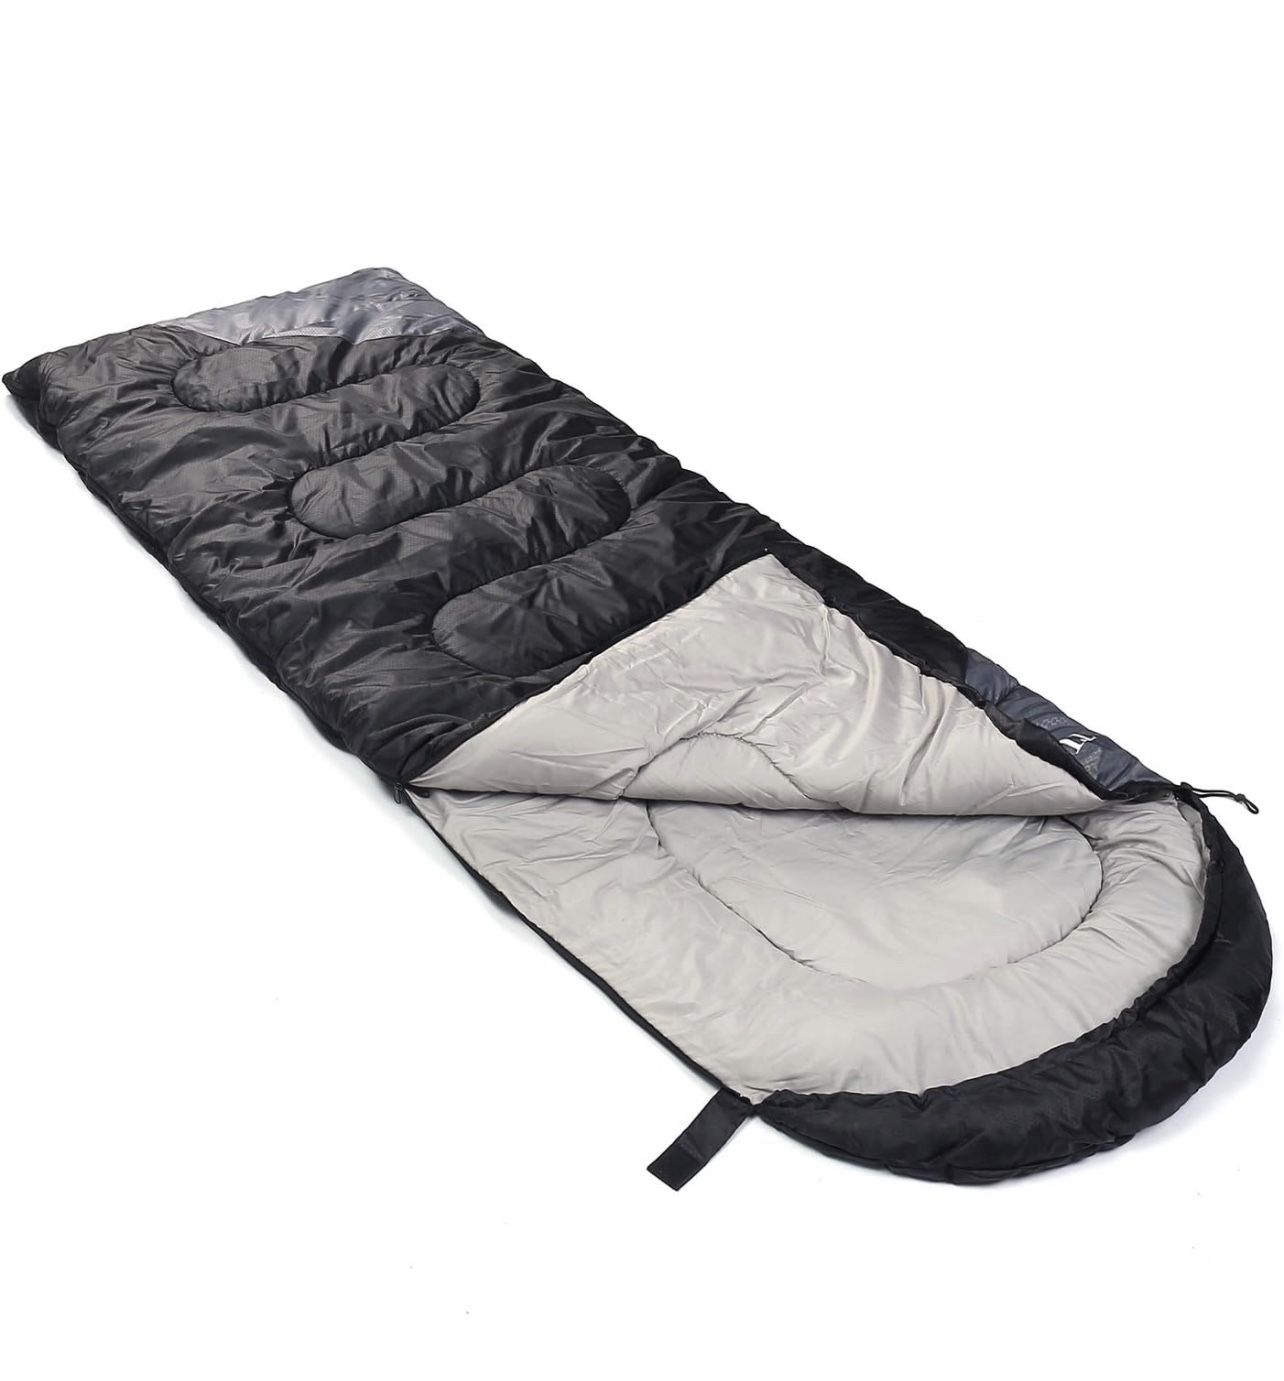 Lightweight & Waterproof Sleeping Bag